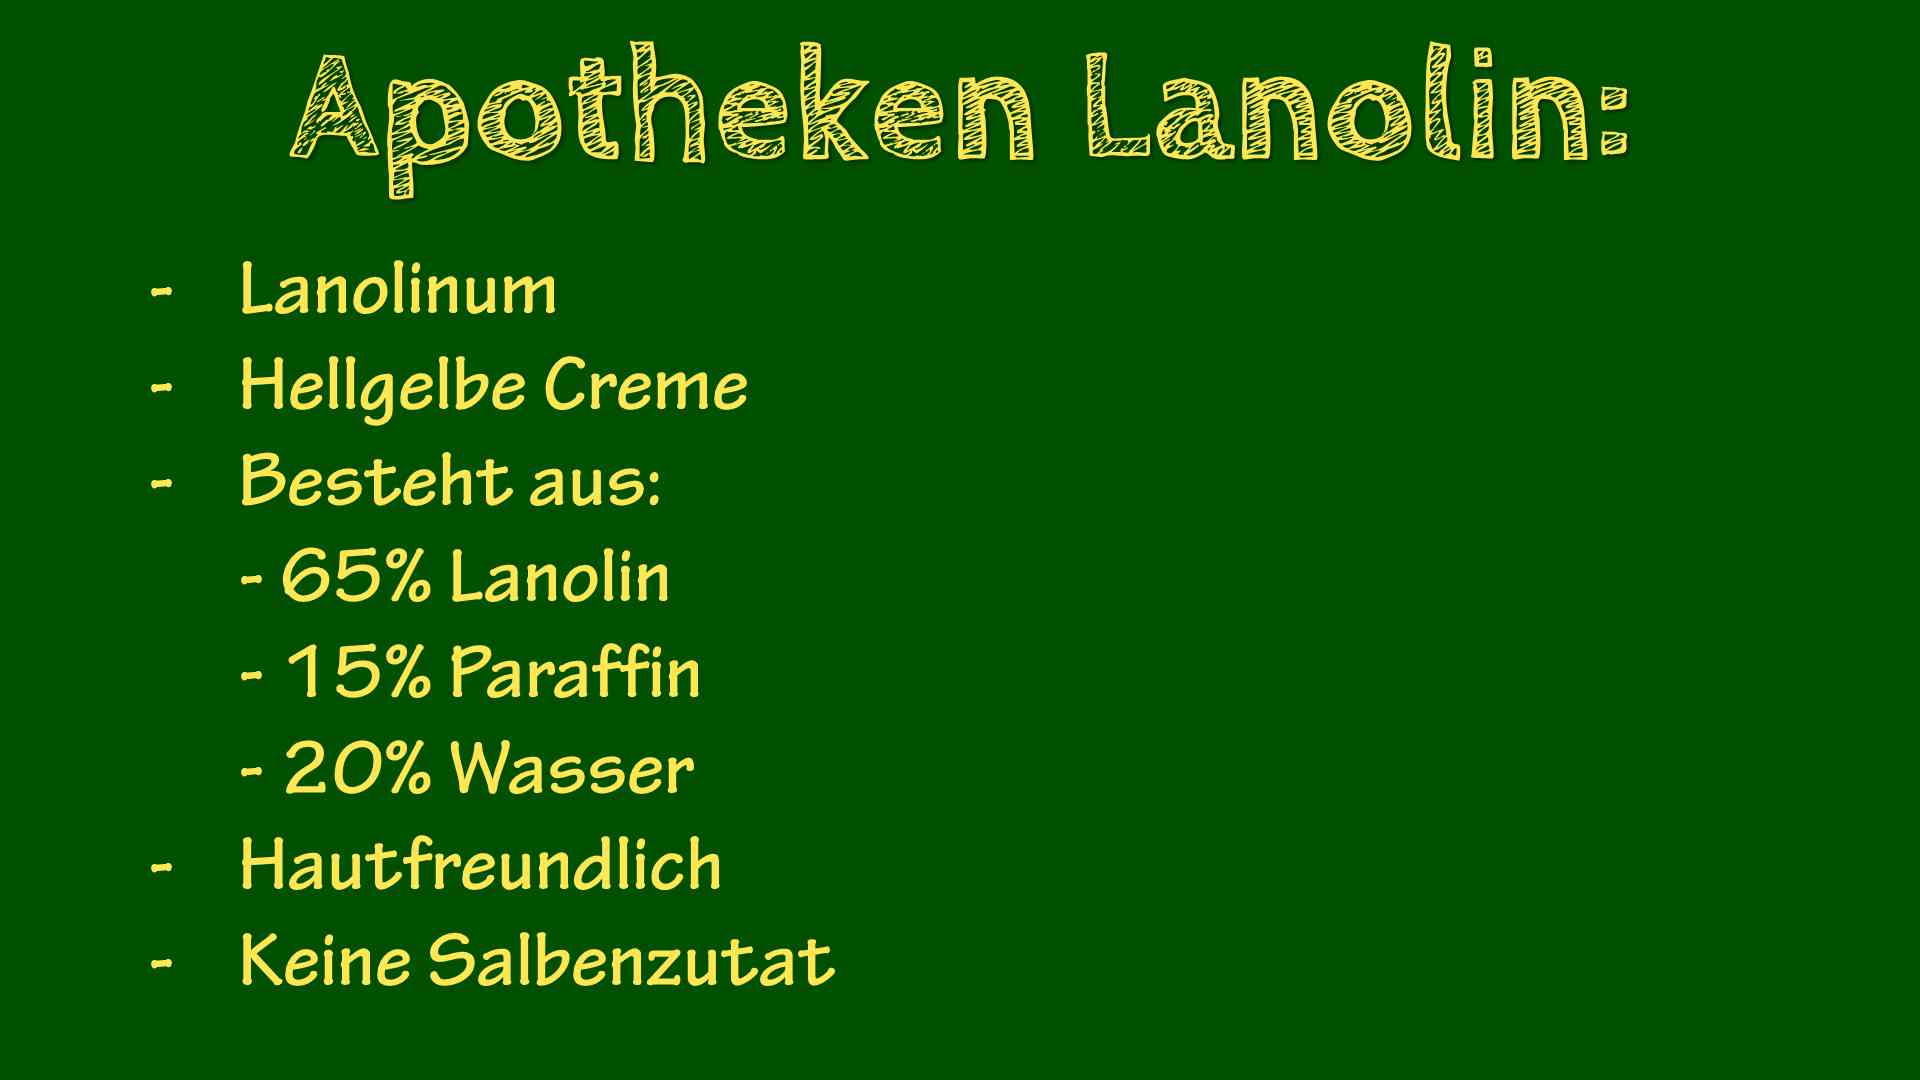 Lanolinum